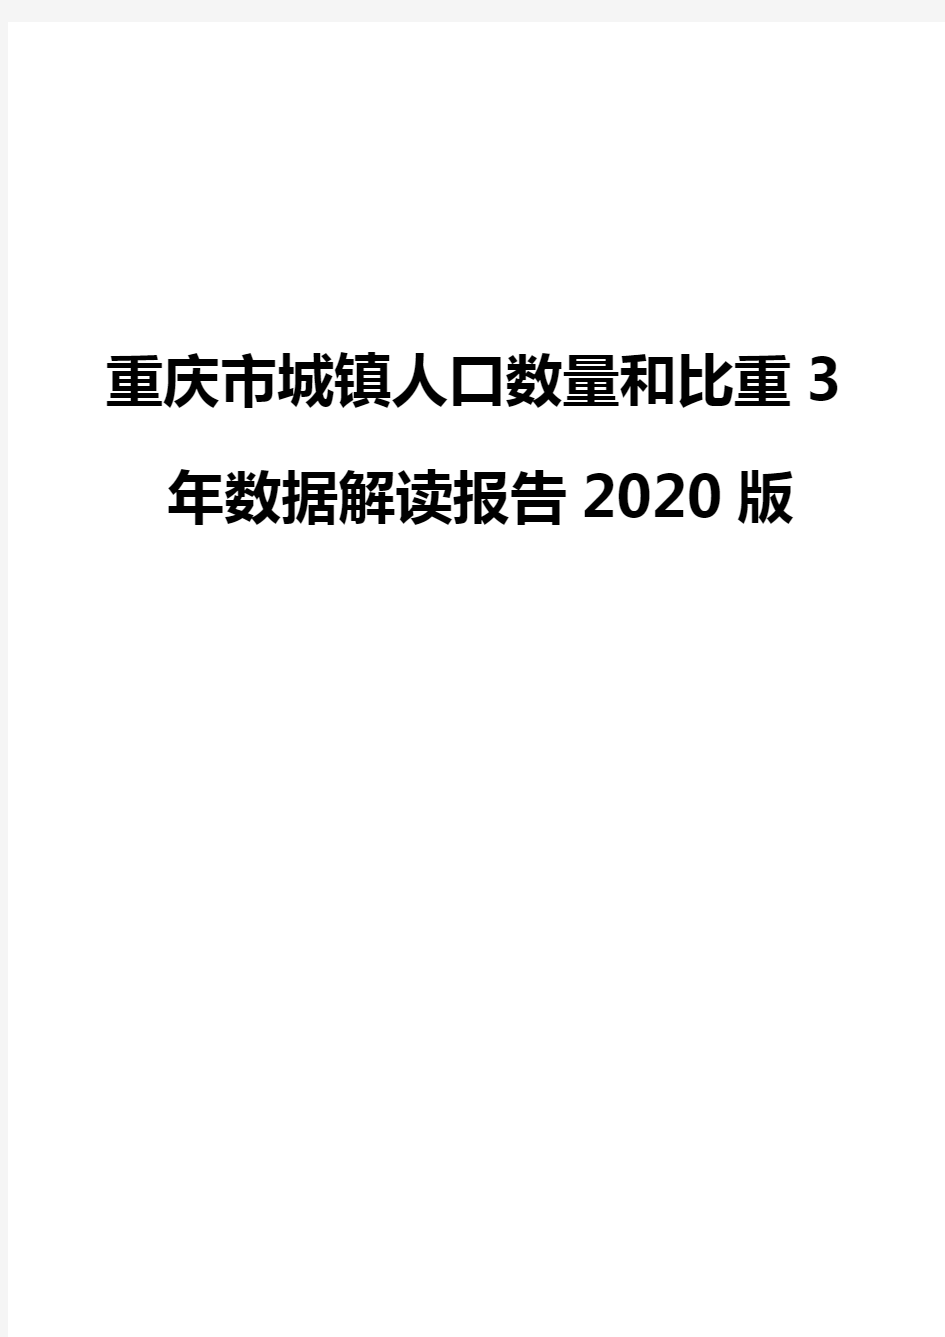 重庆市城镇人口数量和比重3年数据解读报告2020版